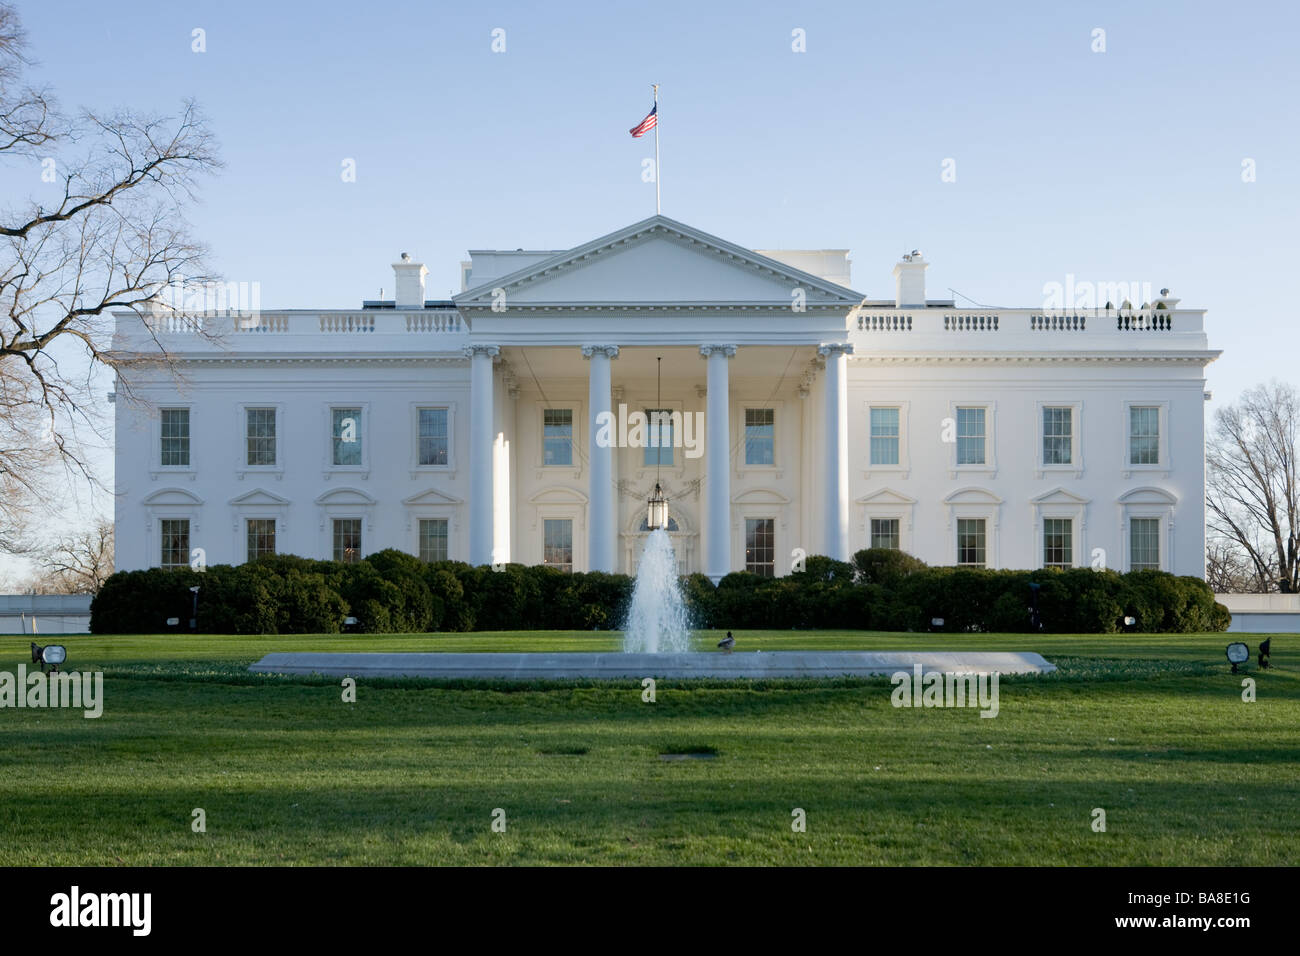 The White House, president's residence, Washington DC, USA Stock Photo